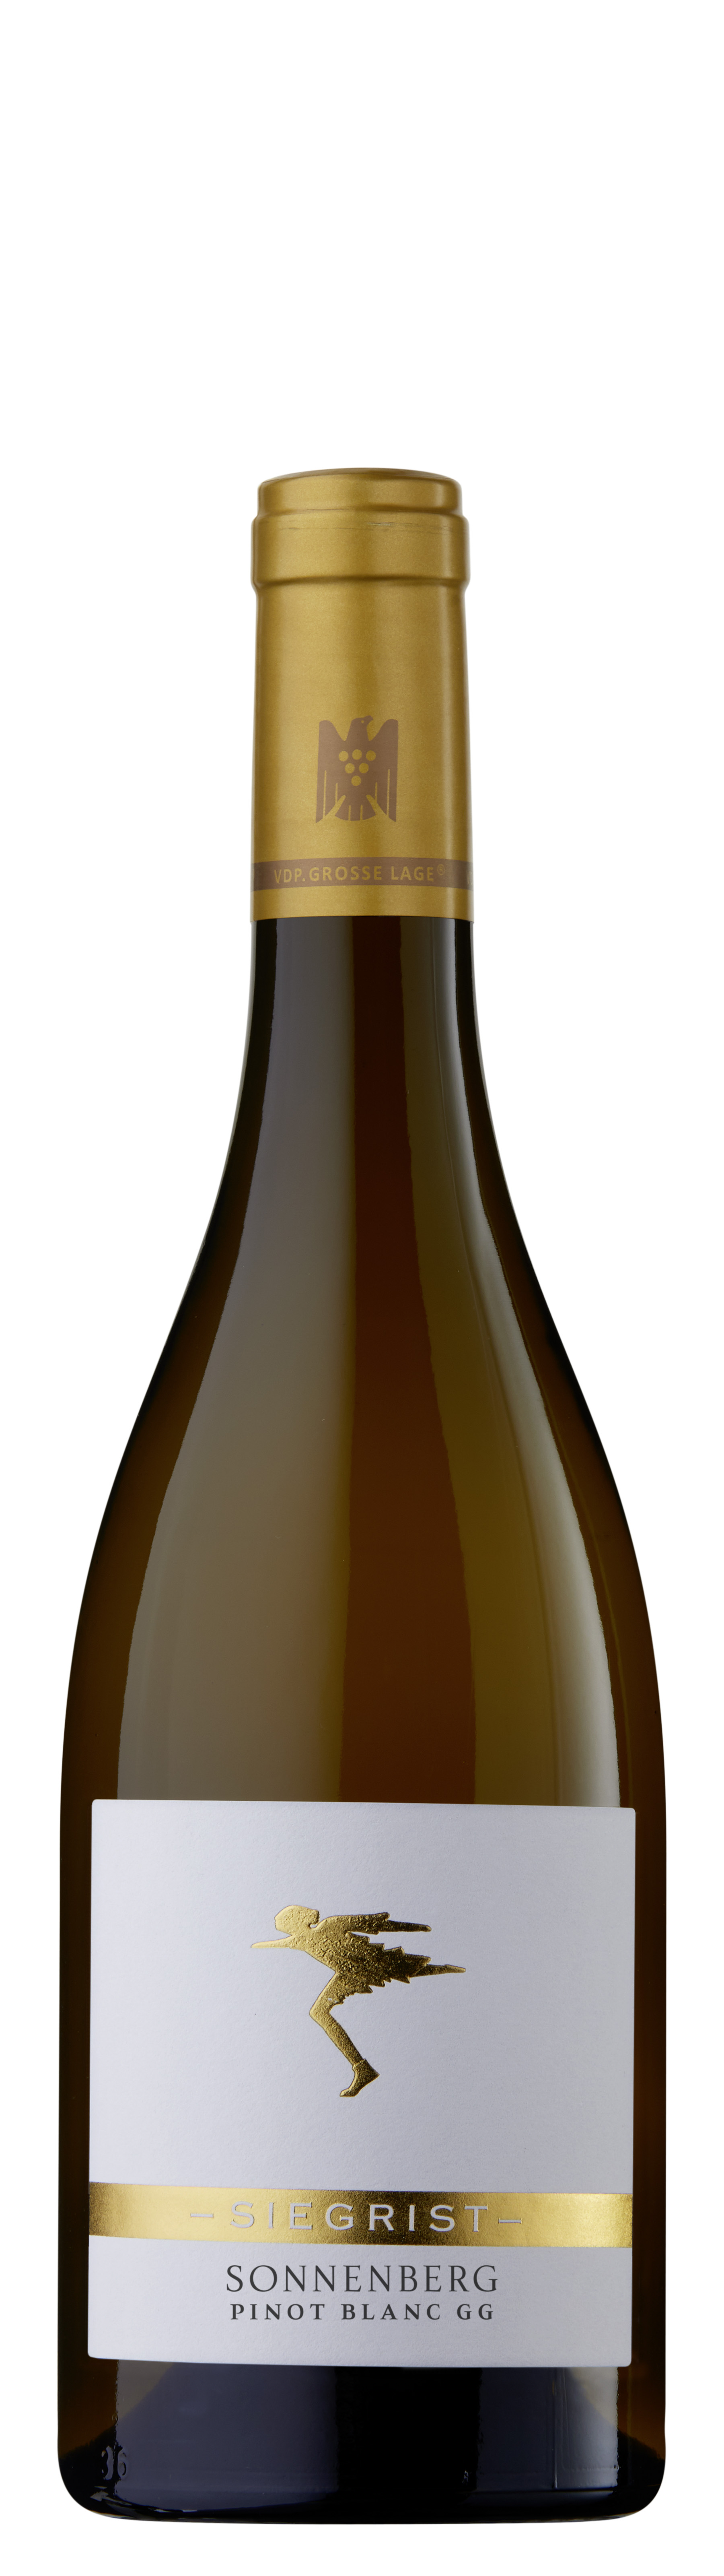 2019 Pinot Blanc trocken GG "Sonnenberg" 0,75 L - Weingut Siegrist